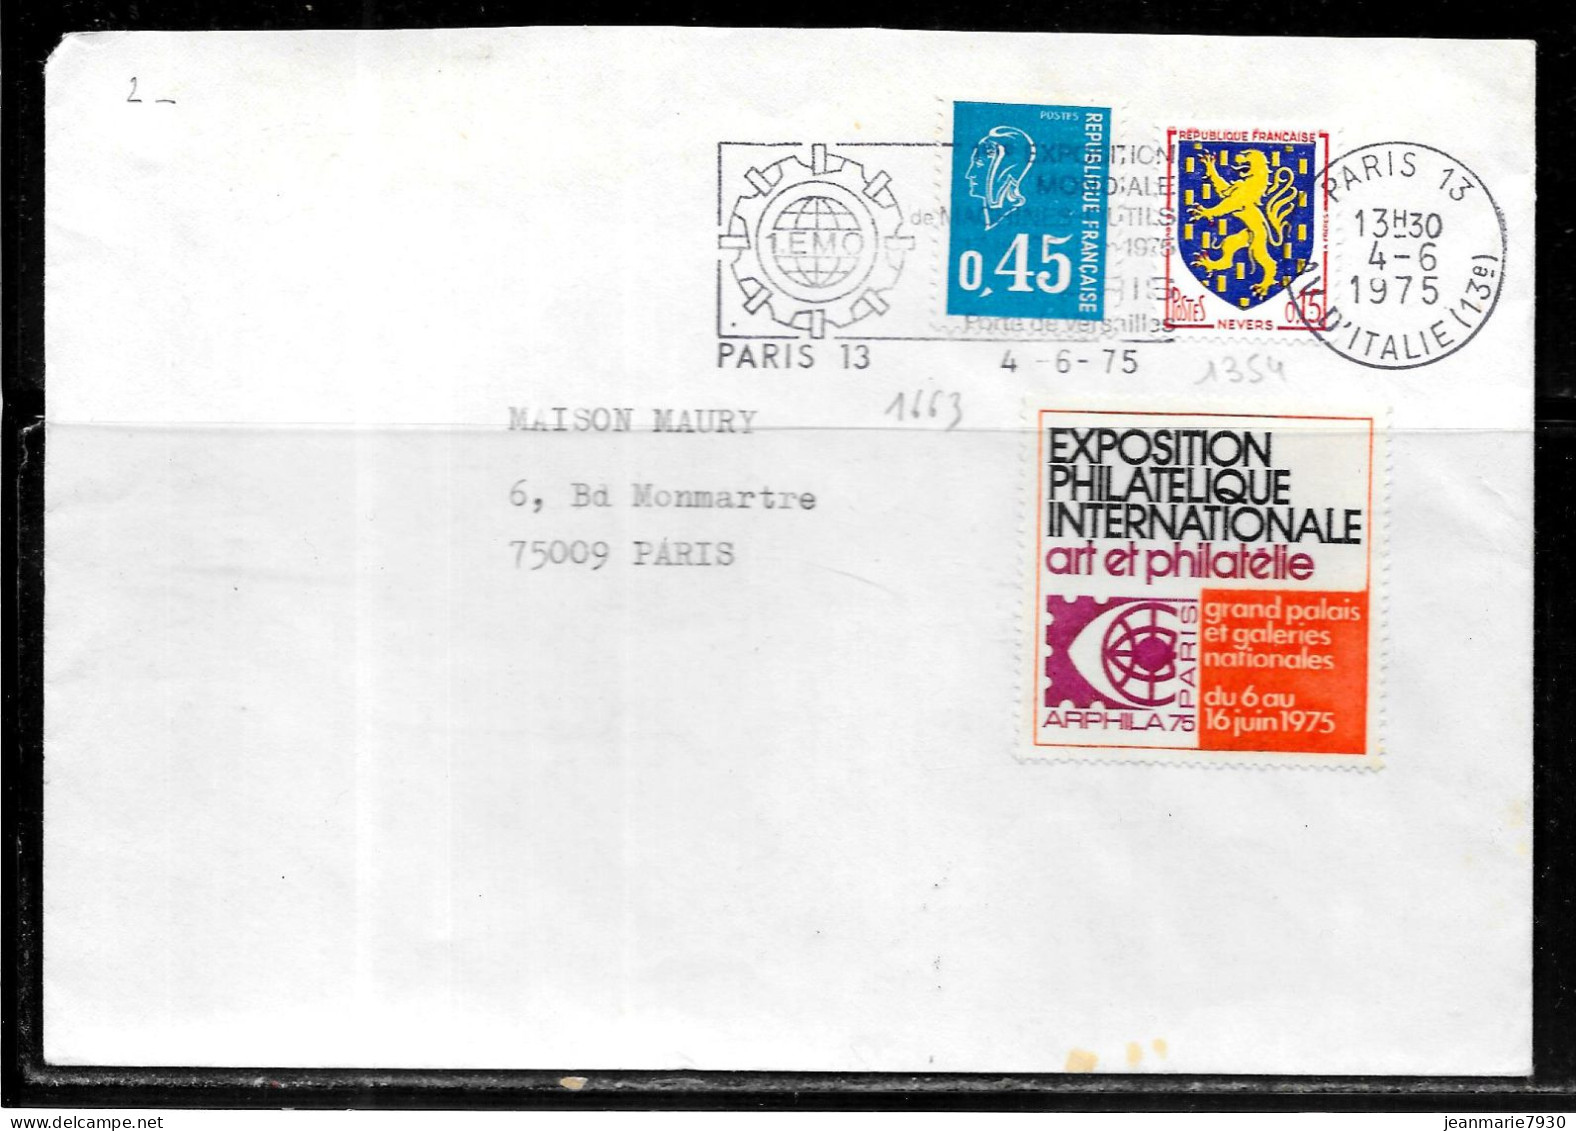 F269 - LETTRE DE PARIS 13 DU 04/06/75 - VIGNETTE ARPHILA 75 - Lettres & Documents